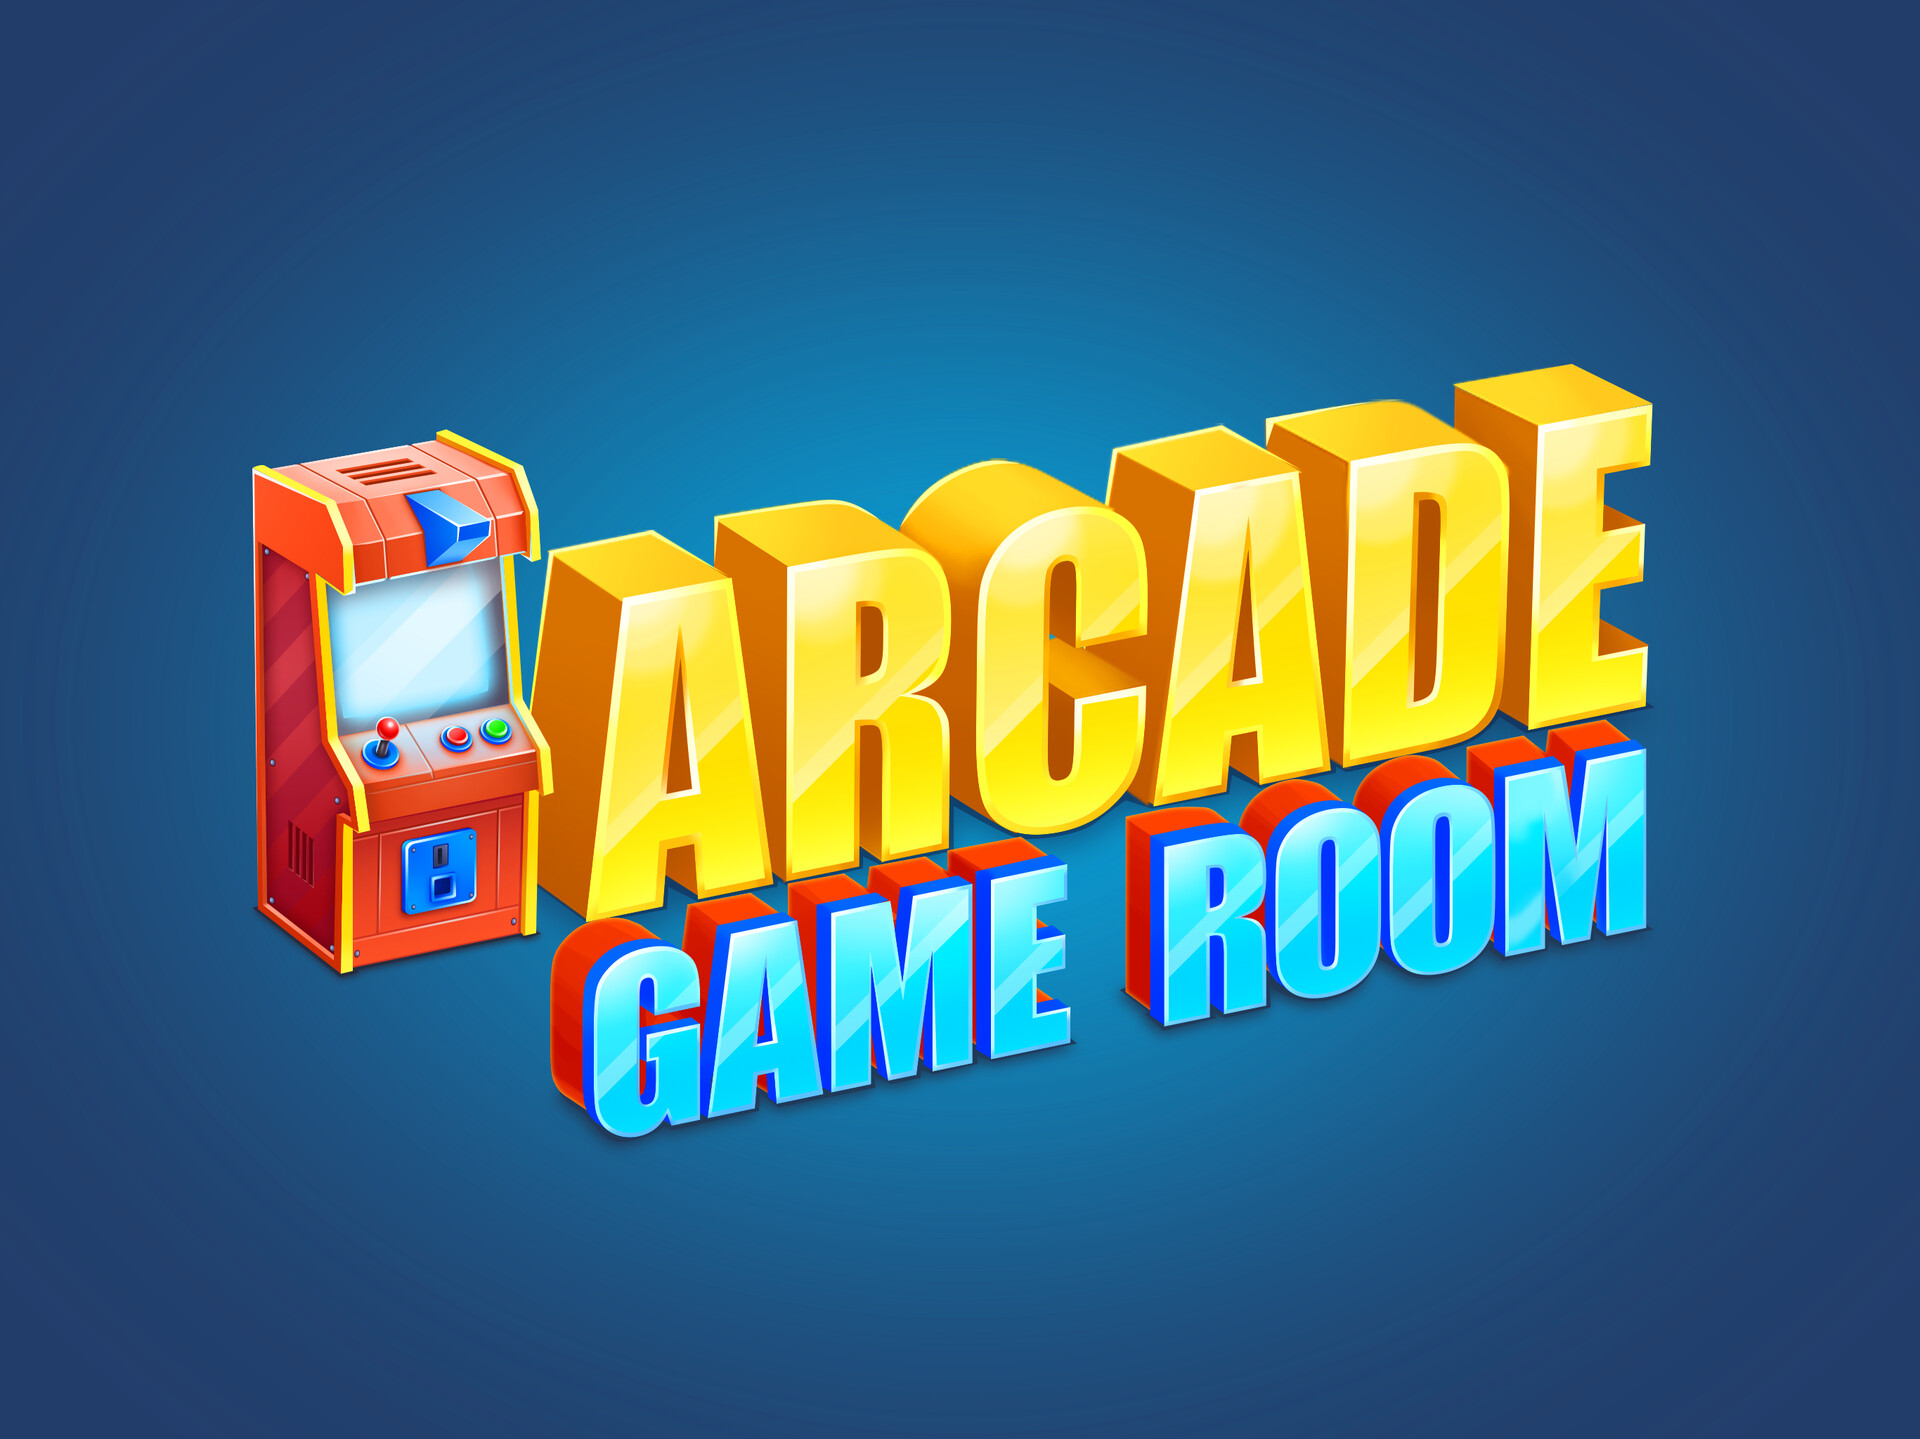 arcade games logo